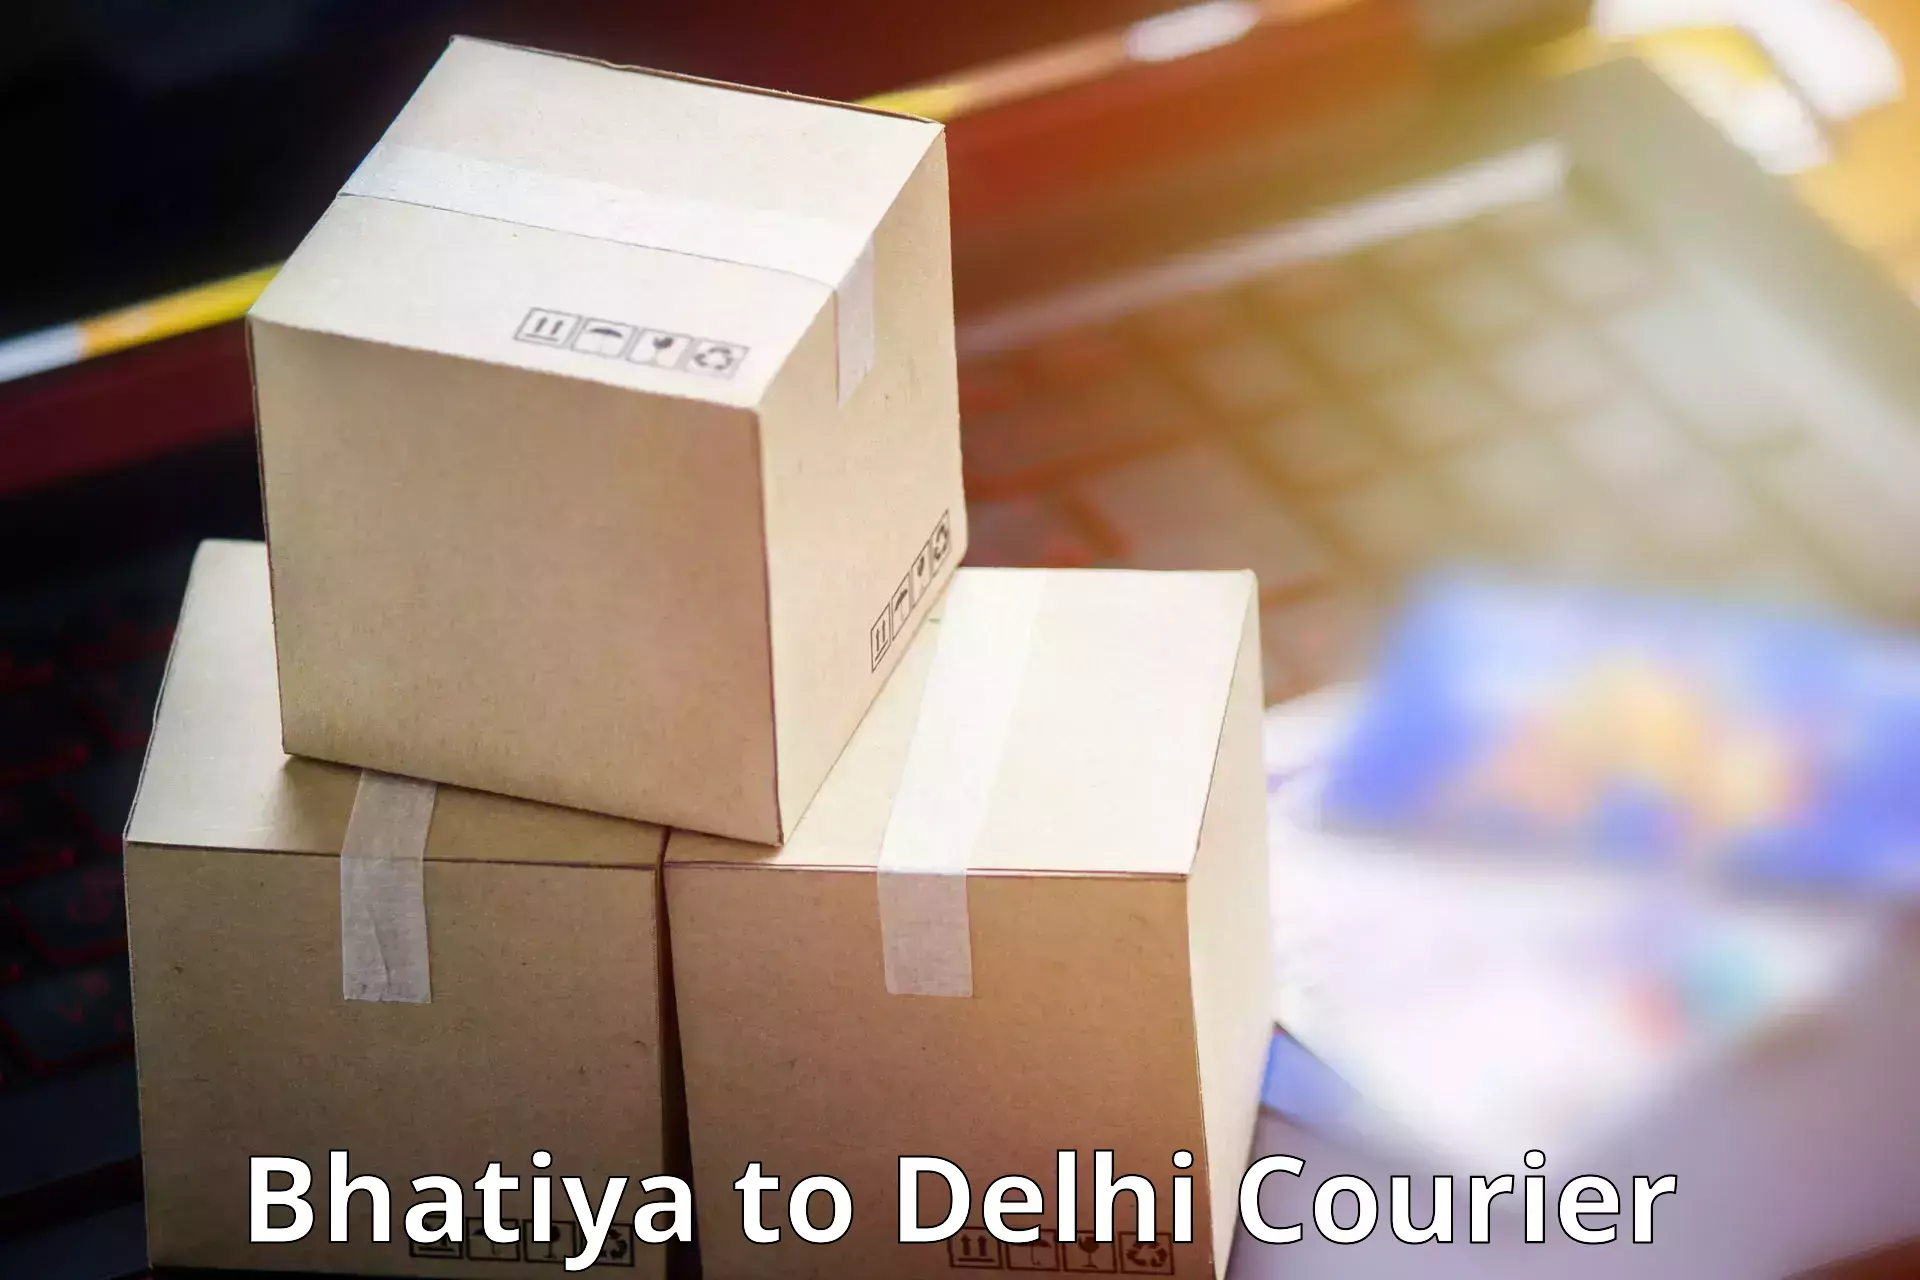 Courier dispatch services Bhatiya to NIT Delhi